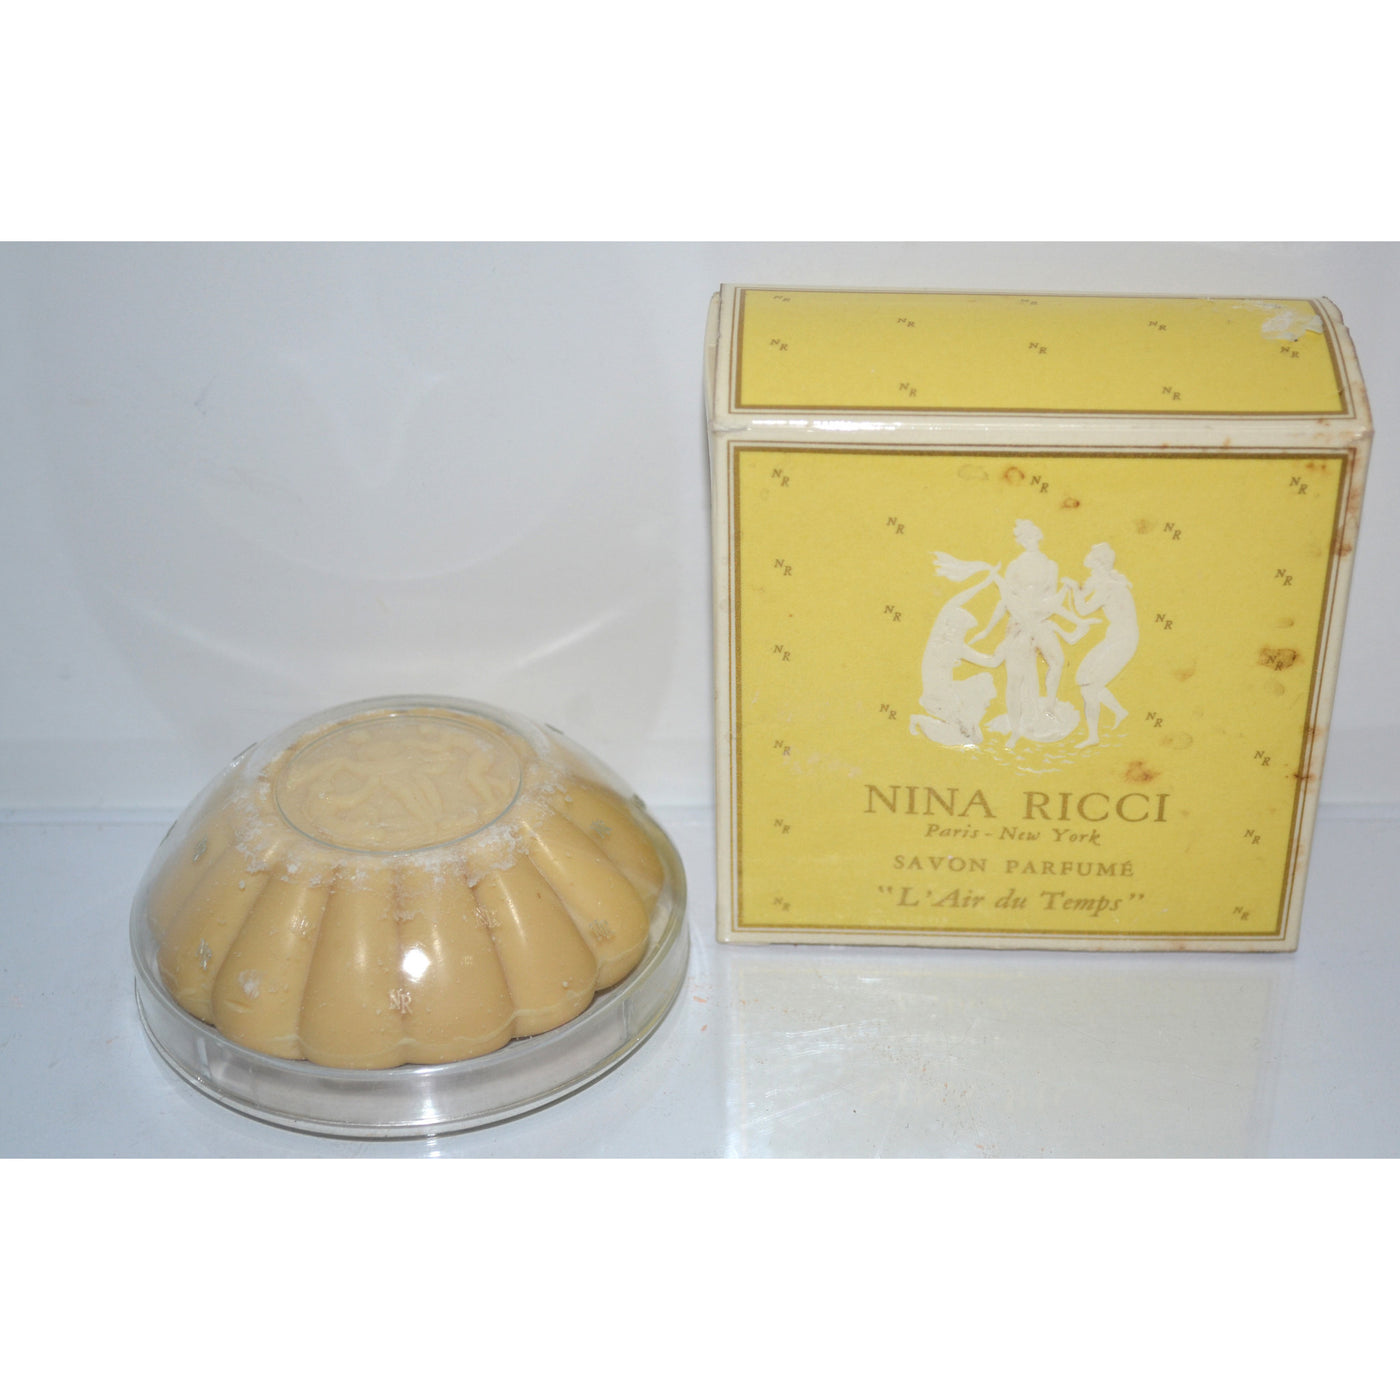 Vintage L'Air du Temps Parfum Soap By Nina Ricci 